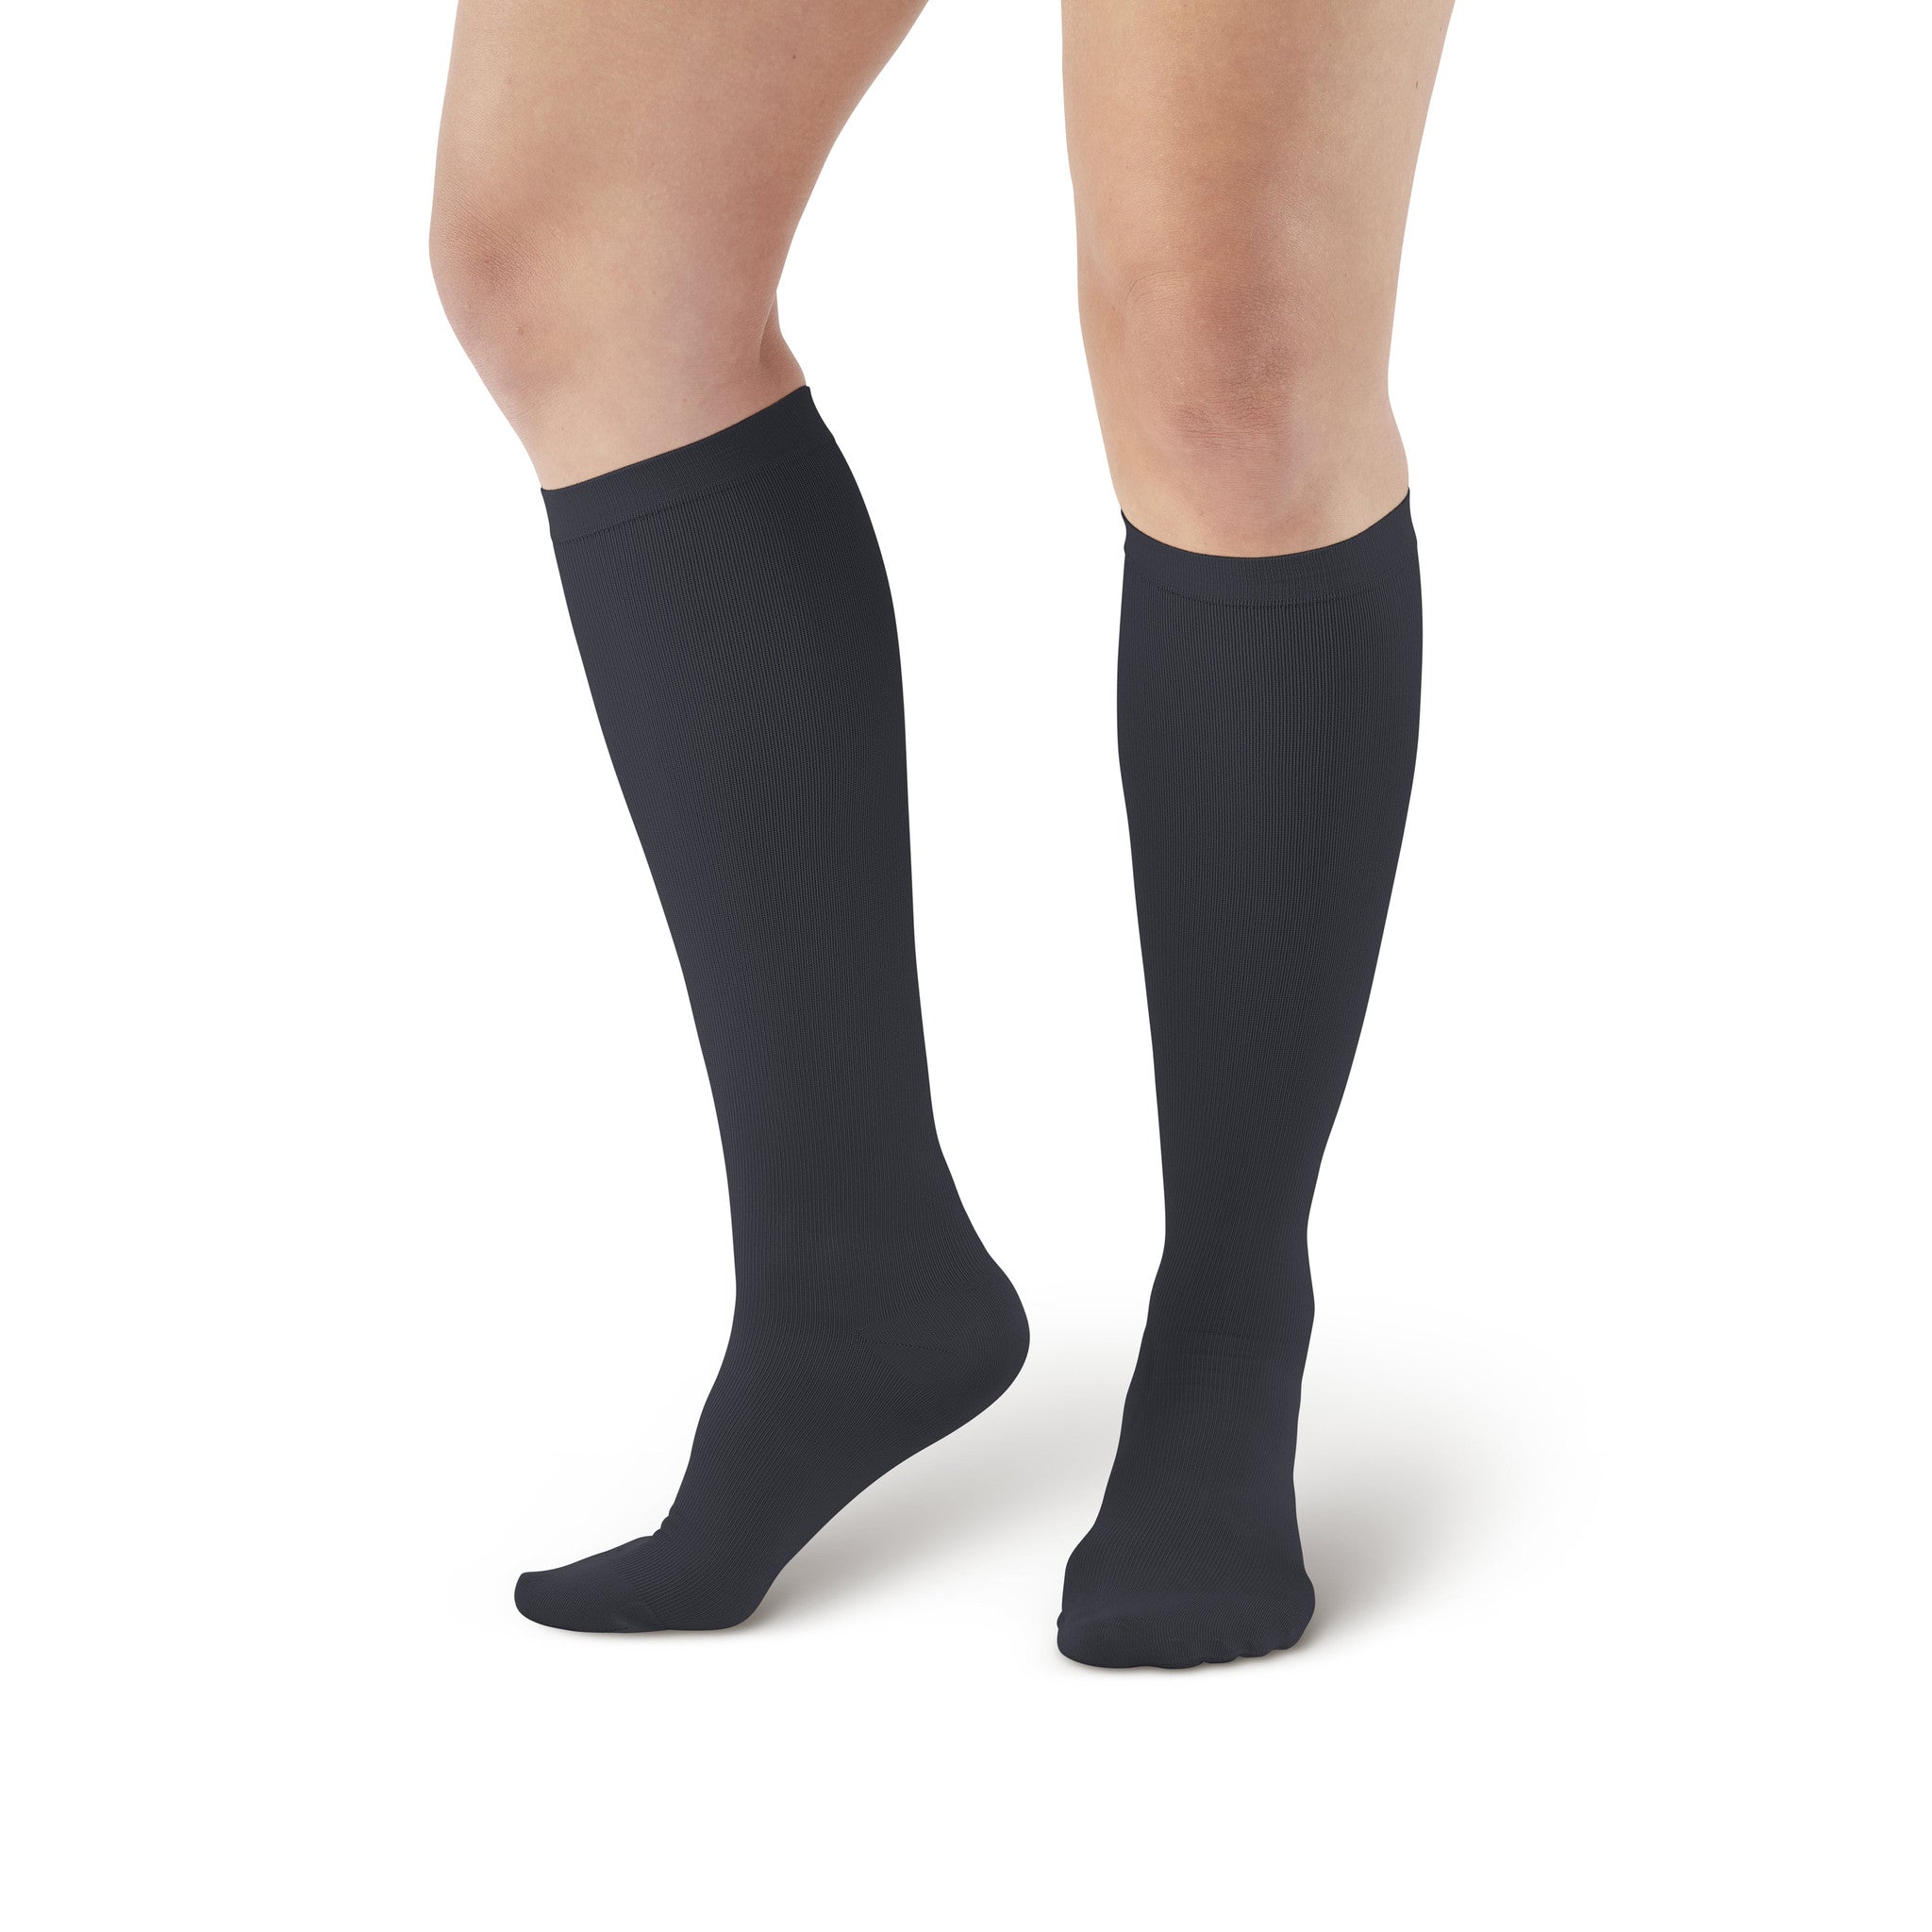 AW Style 115 Women's Microfiber Knee High Trouser Socks - 8-15 mmHg ...